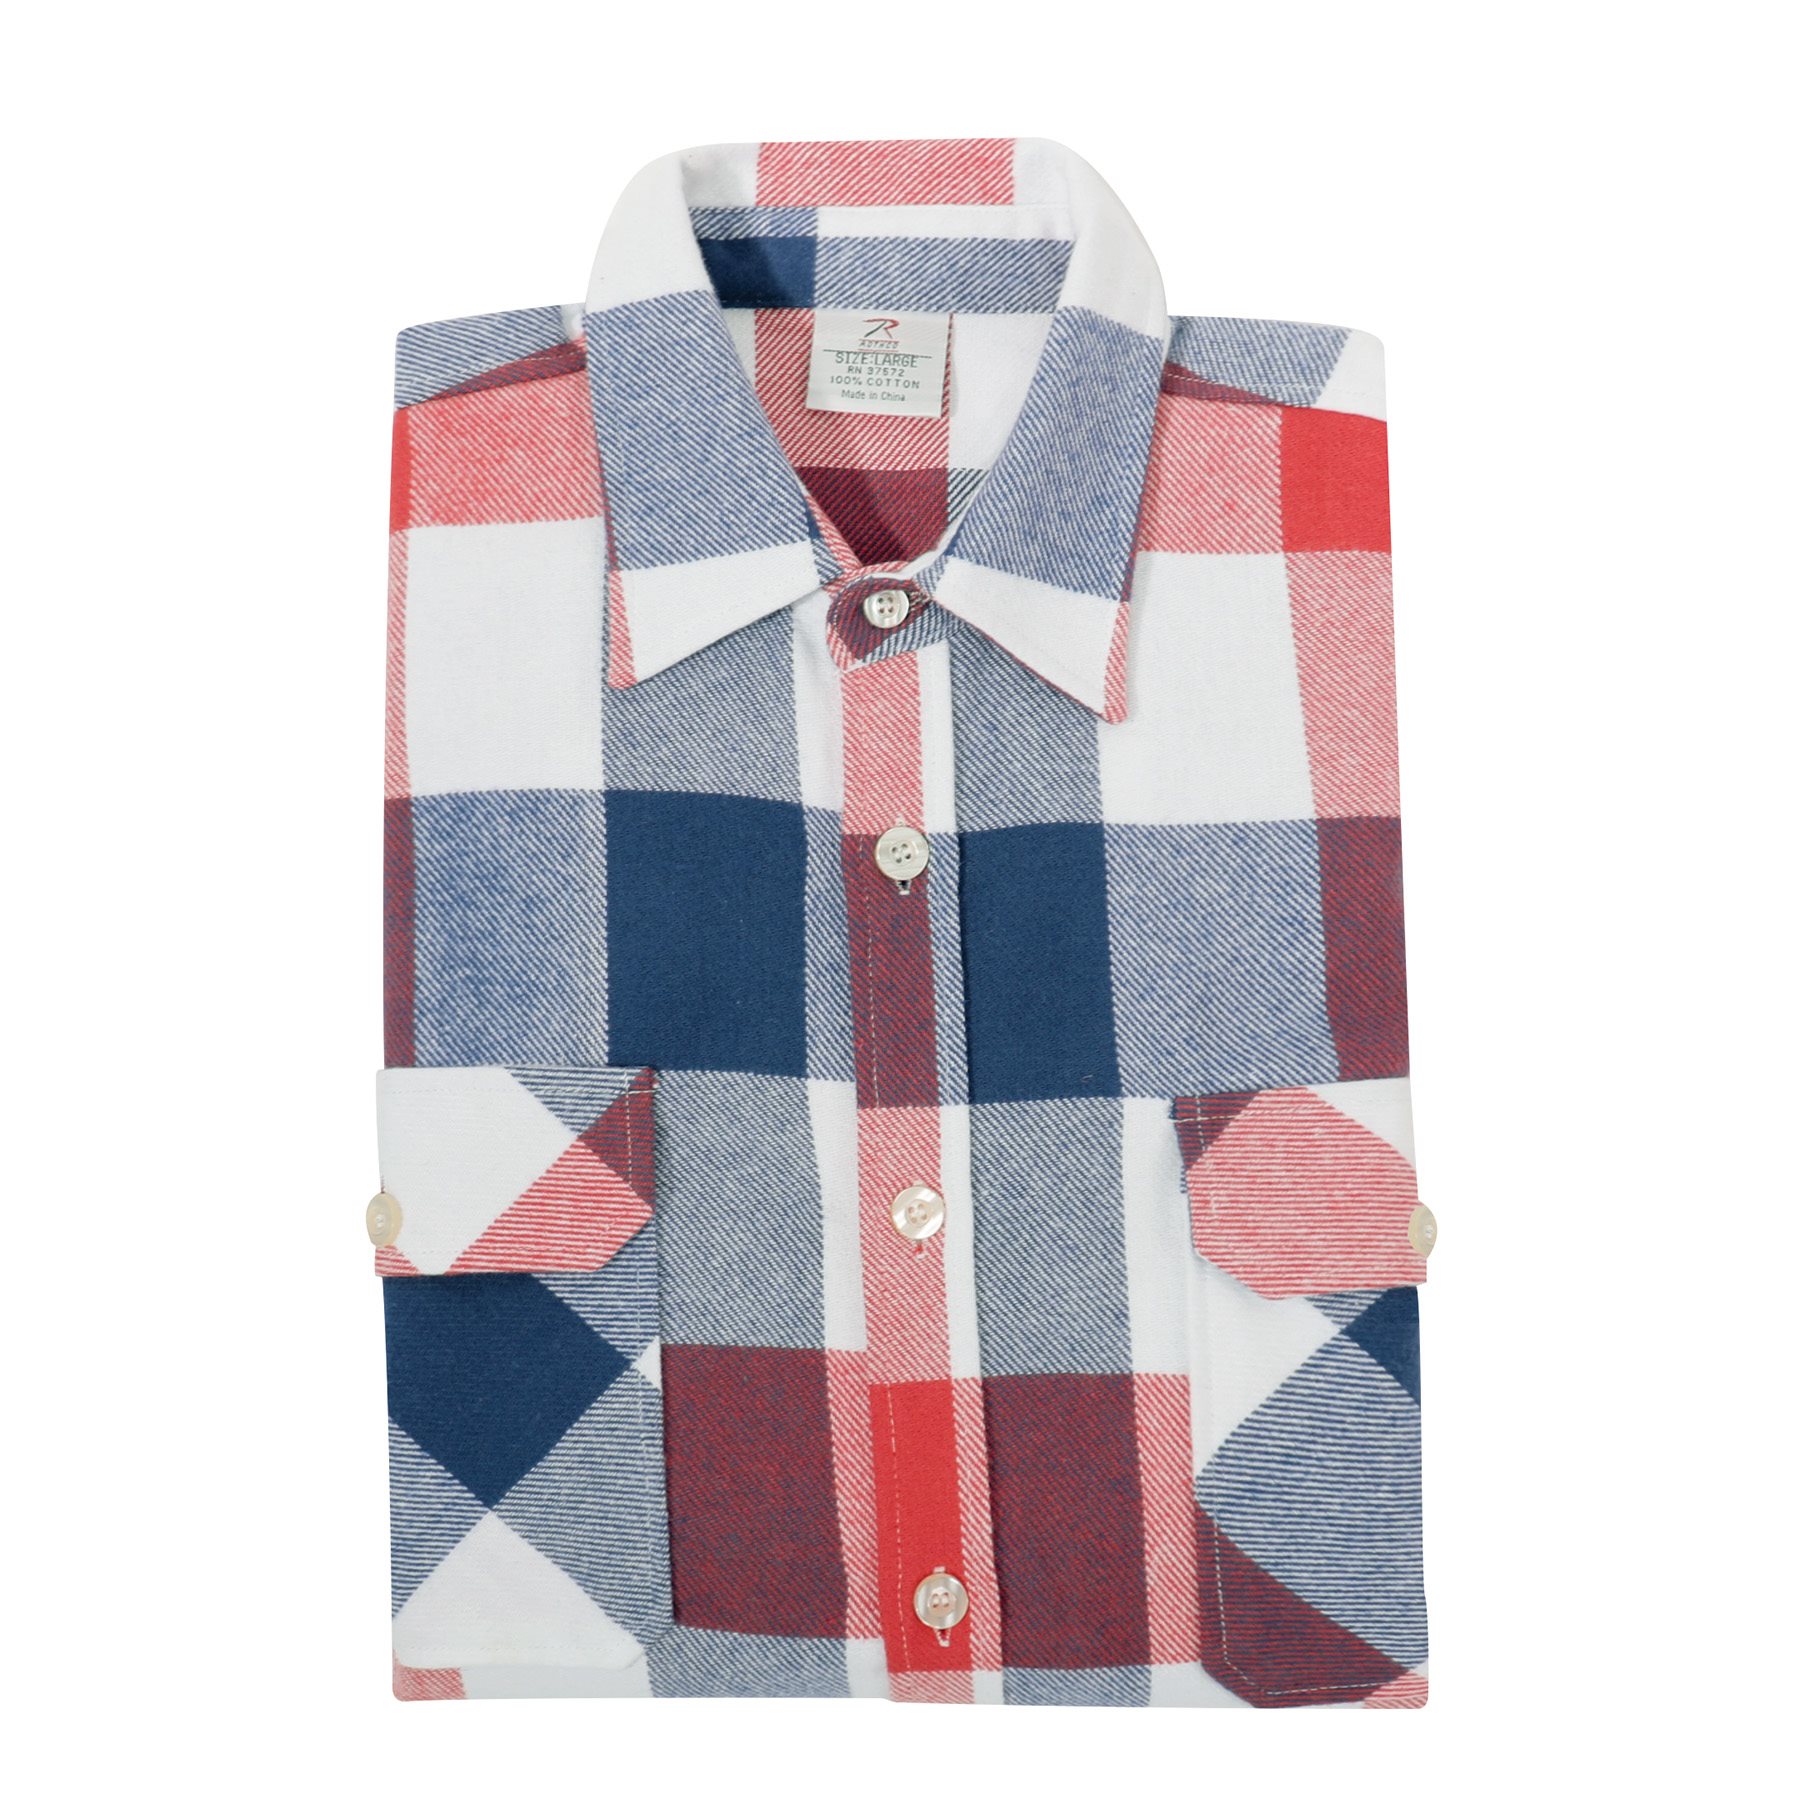 Lumberjack plaid shirt FLANNEL RED/WHITE/BLUE ROTHCO 47390 L-11